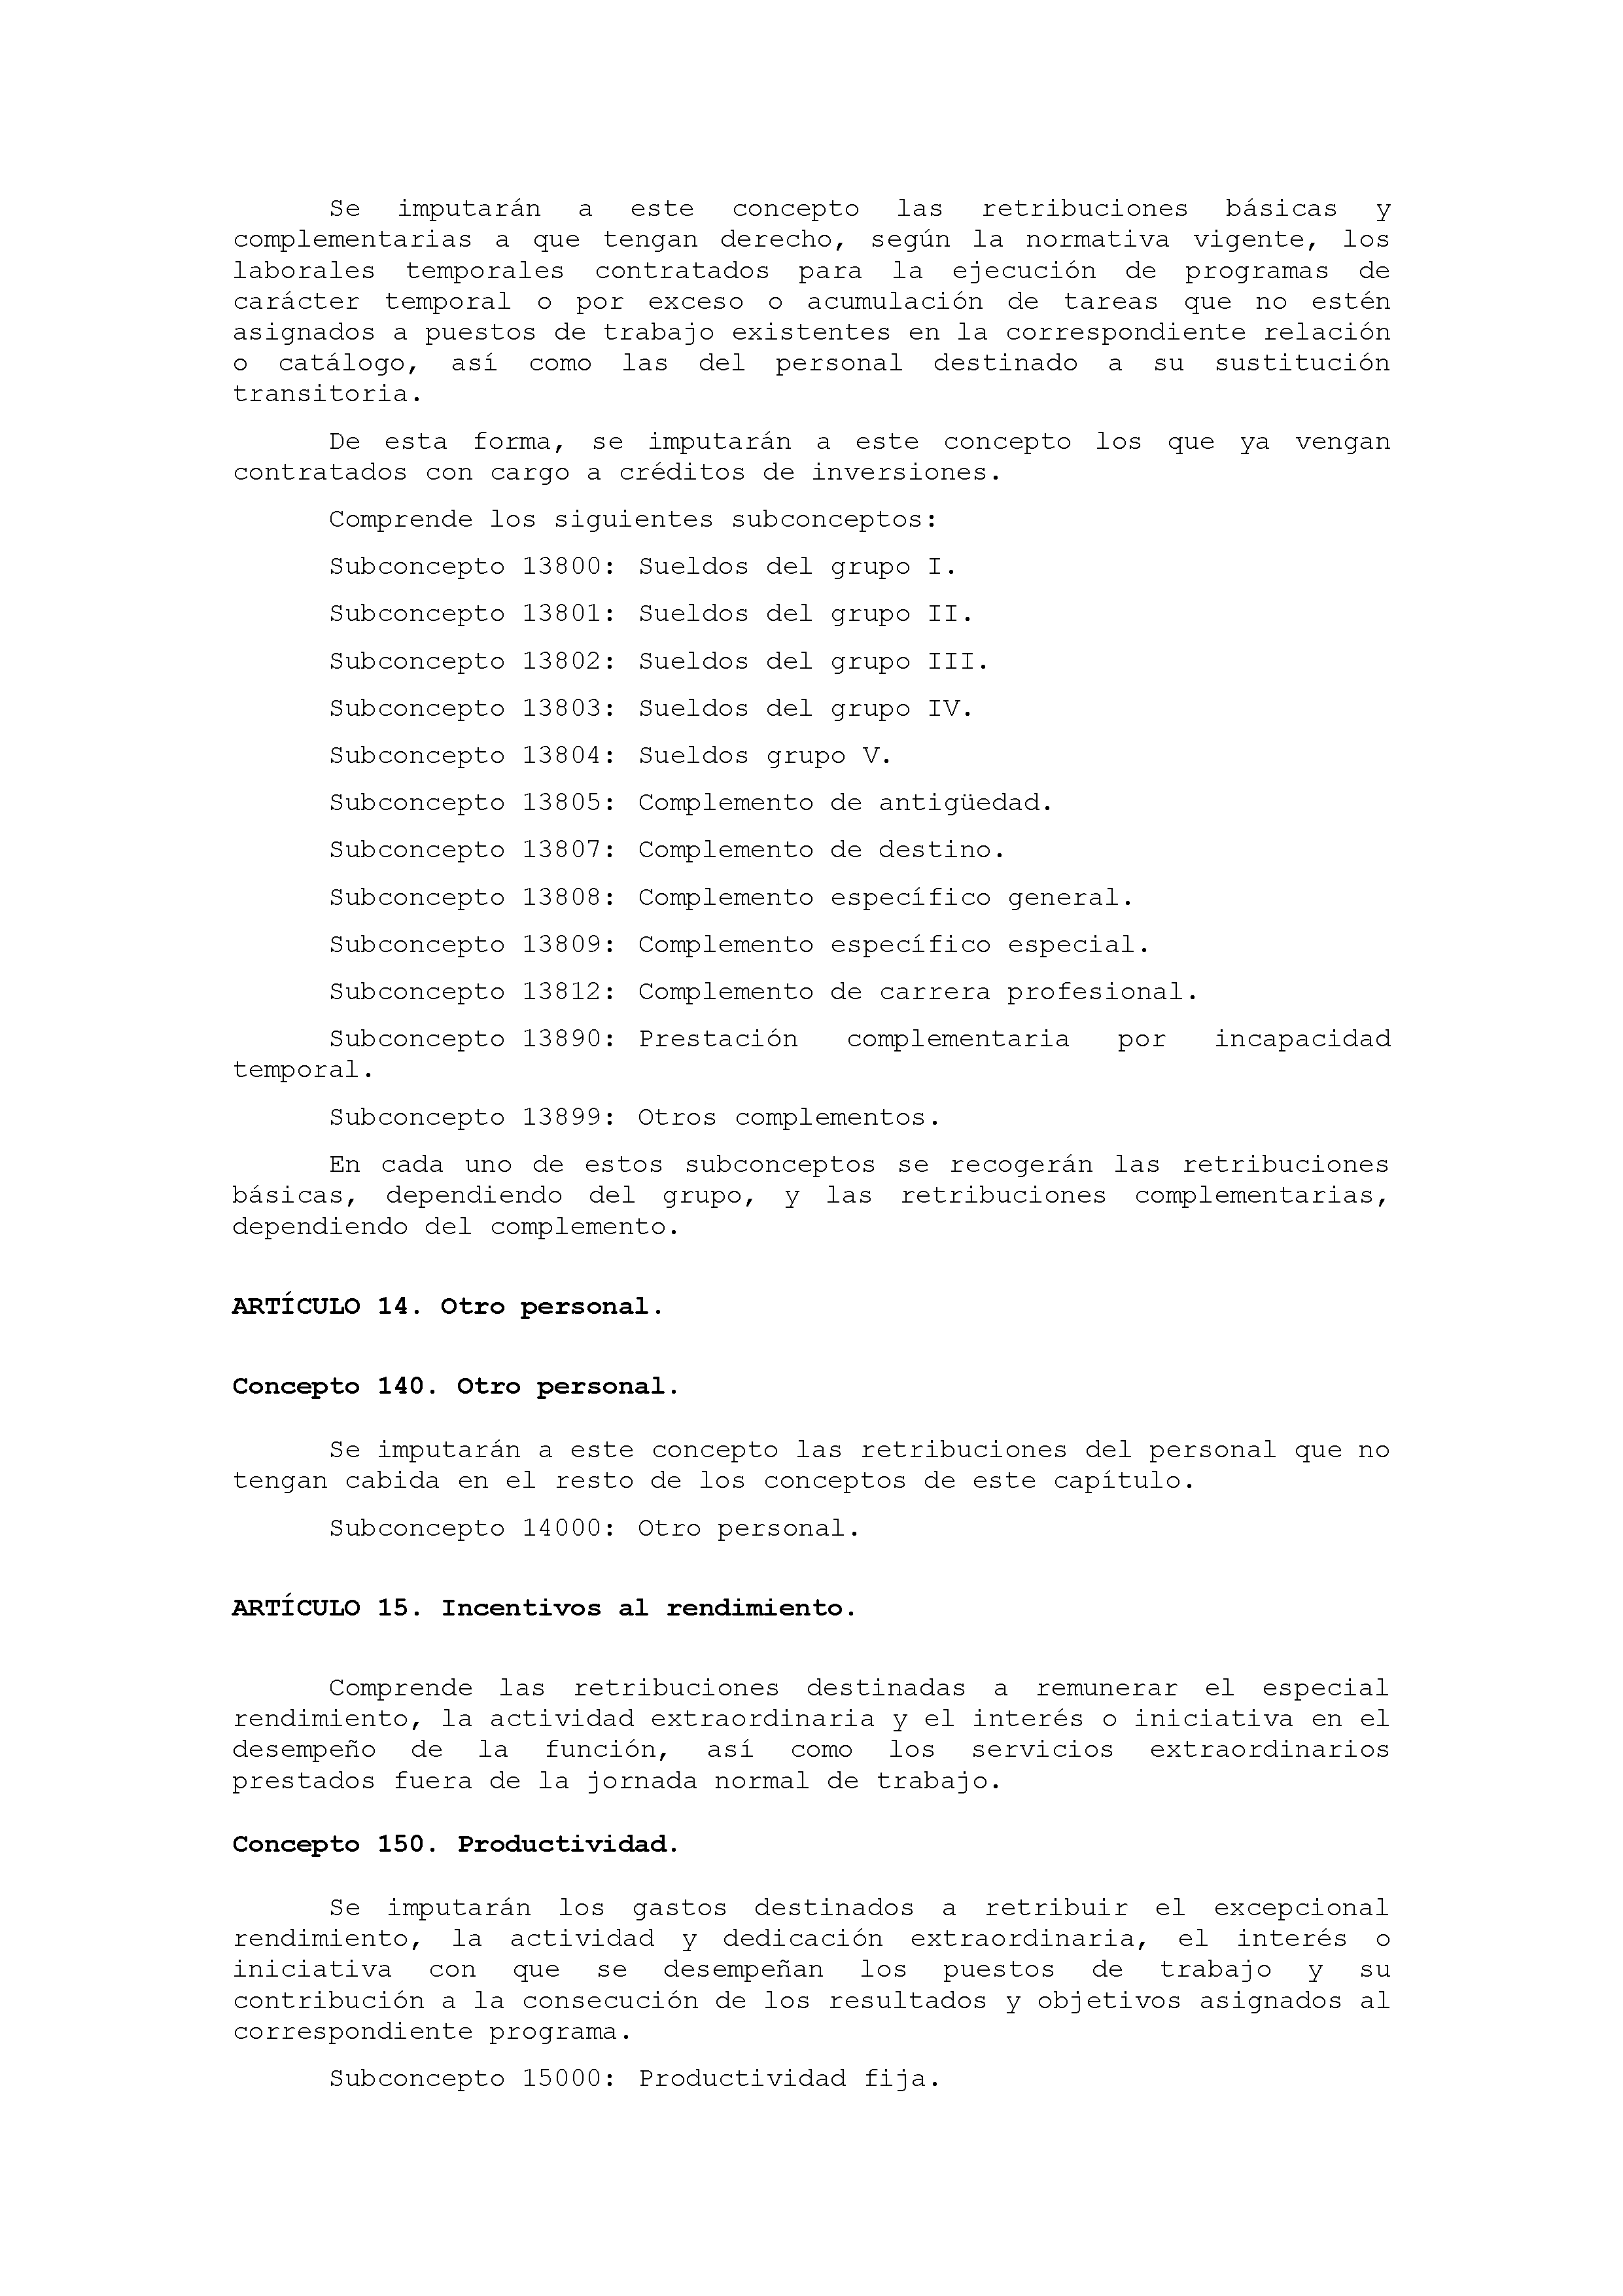 ANEXO IX CÓDIGO DE LA CLASIFICACIÓN ECONÓMICA DE LOS GASTOS PÚBLICOS Pag 12